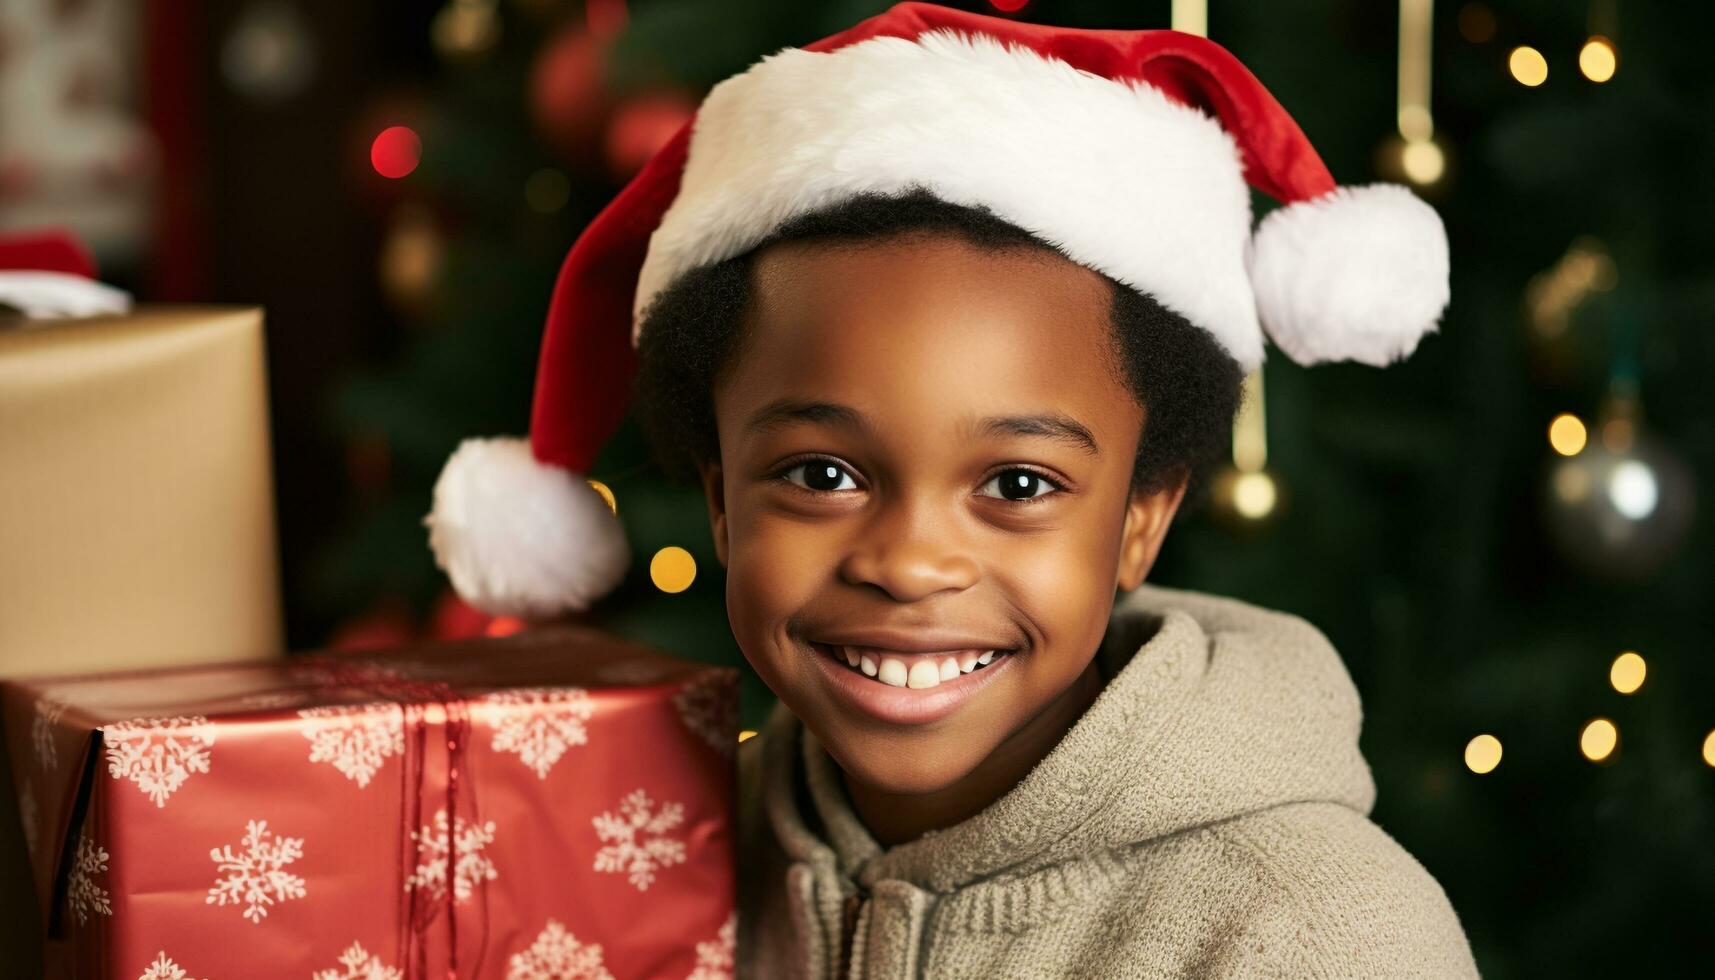 AI generated Smiling child holding gift, celebrating Christmas joyfully generated by AI photo